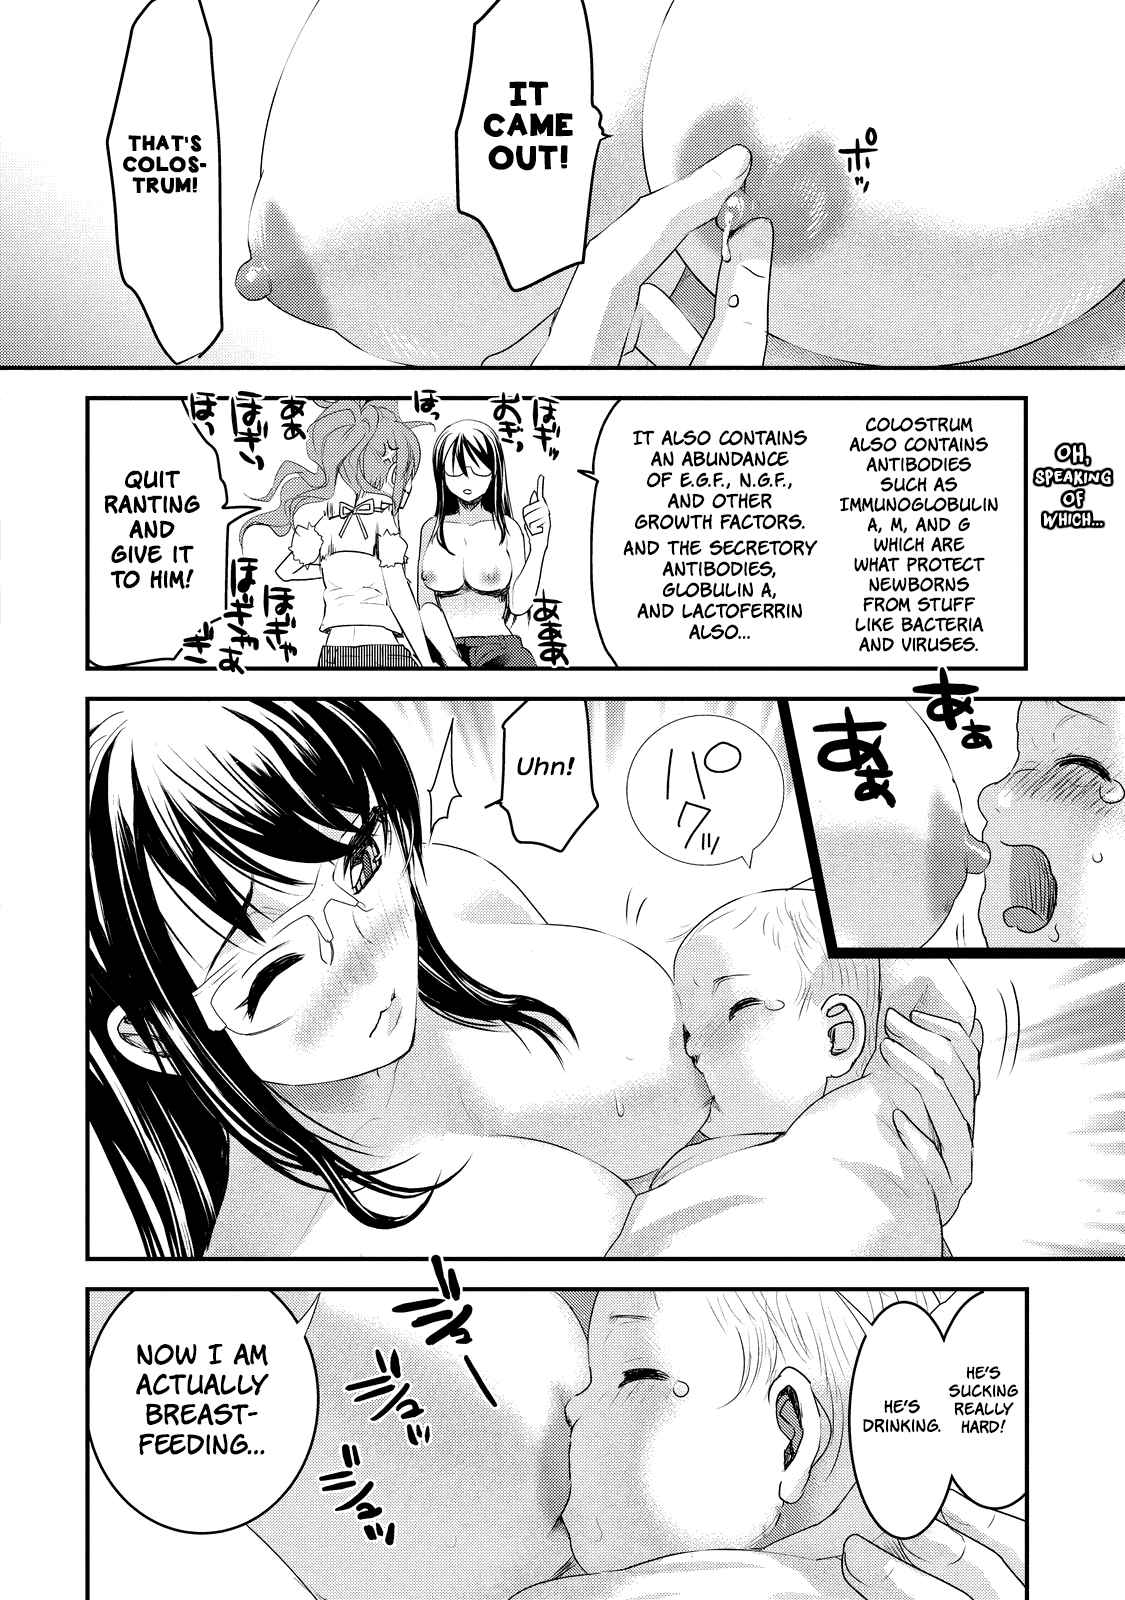 Chichi no Jikan Vol. 1 Ch. 1 I'm a Male Mother